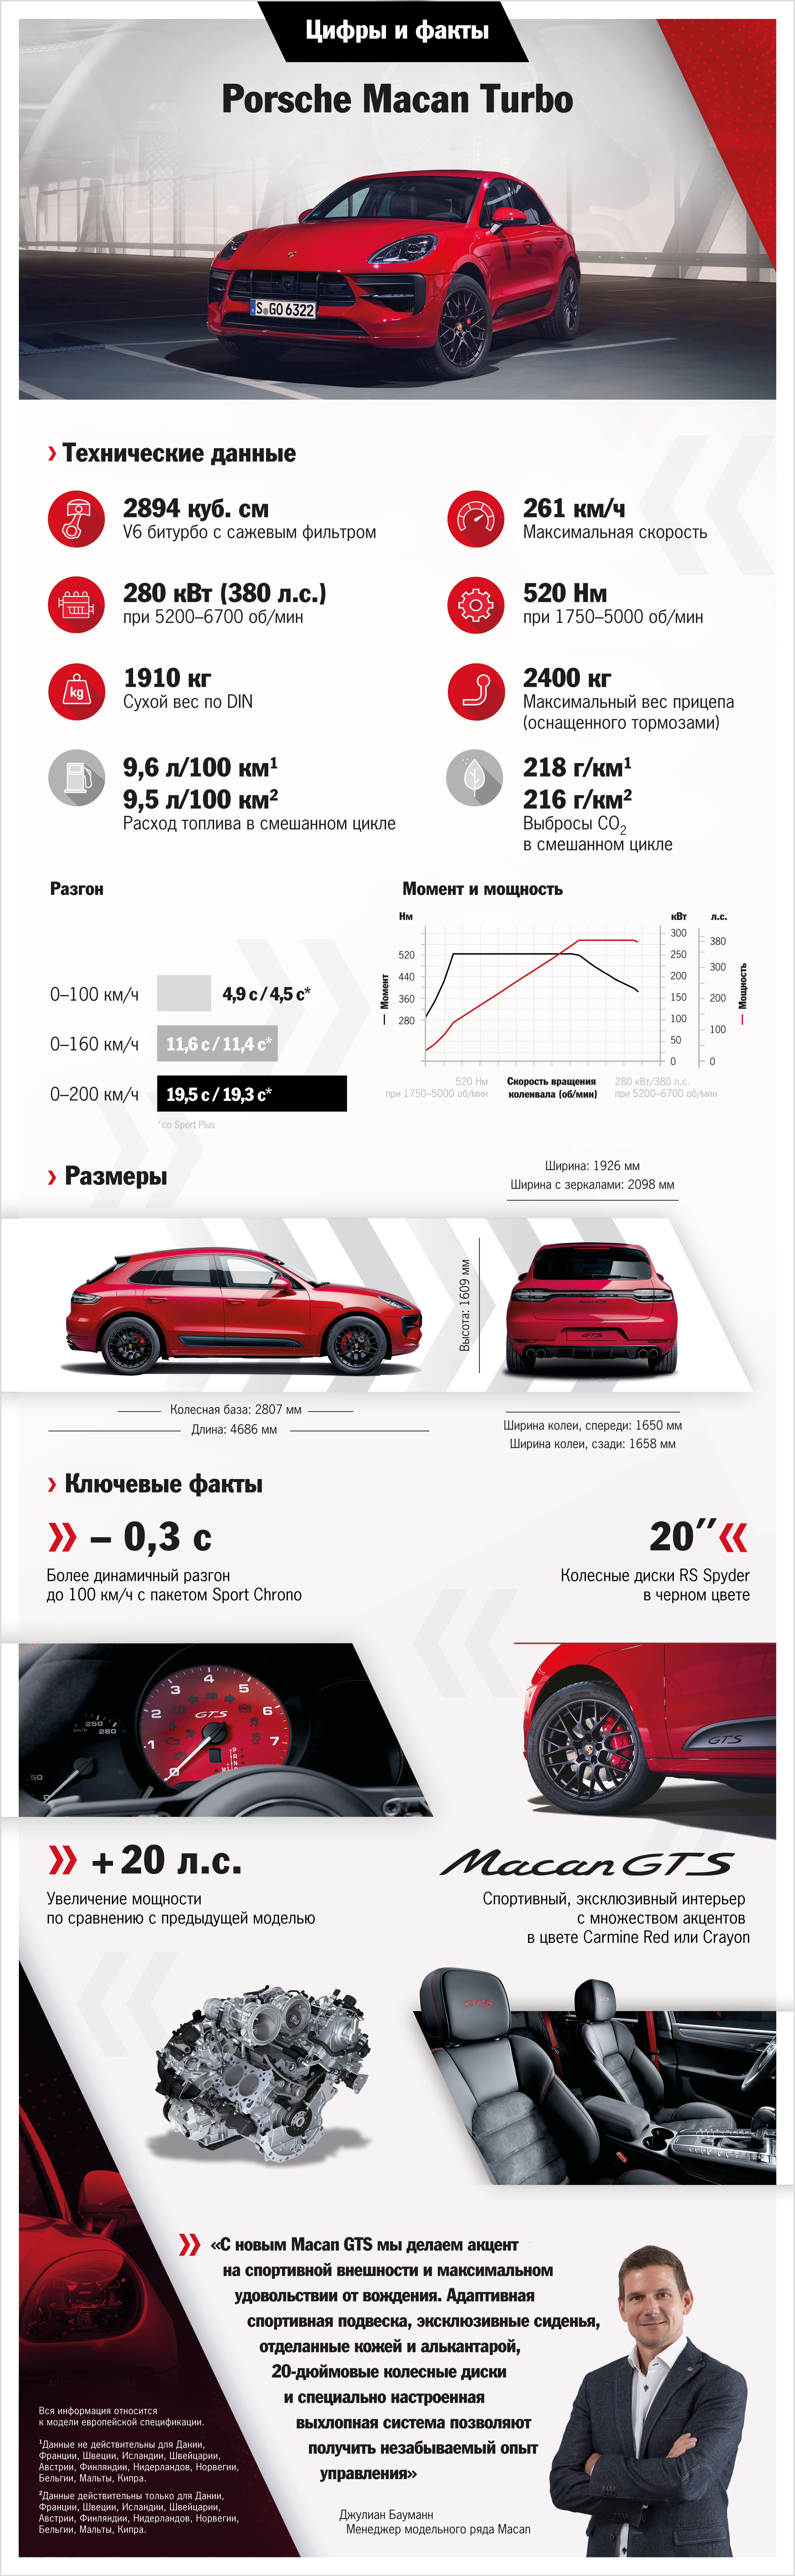 Macan GTS, Инфографика, 2019, Porsche AG